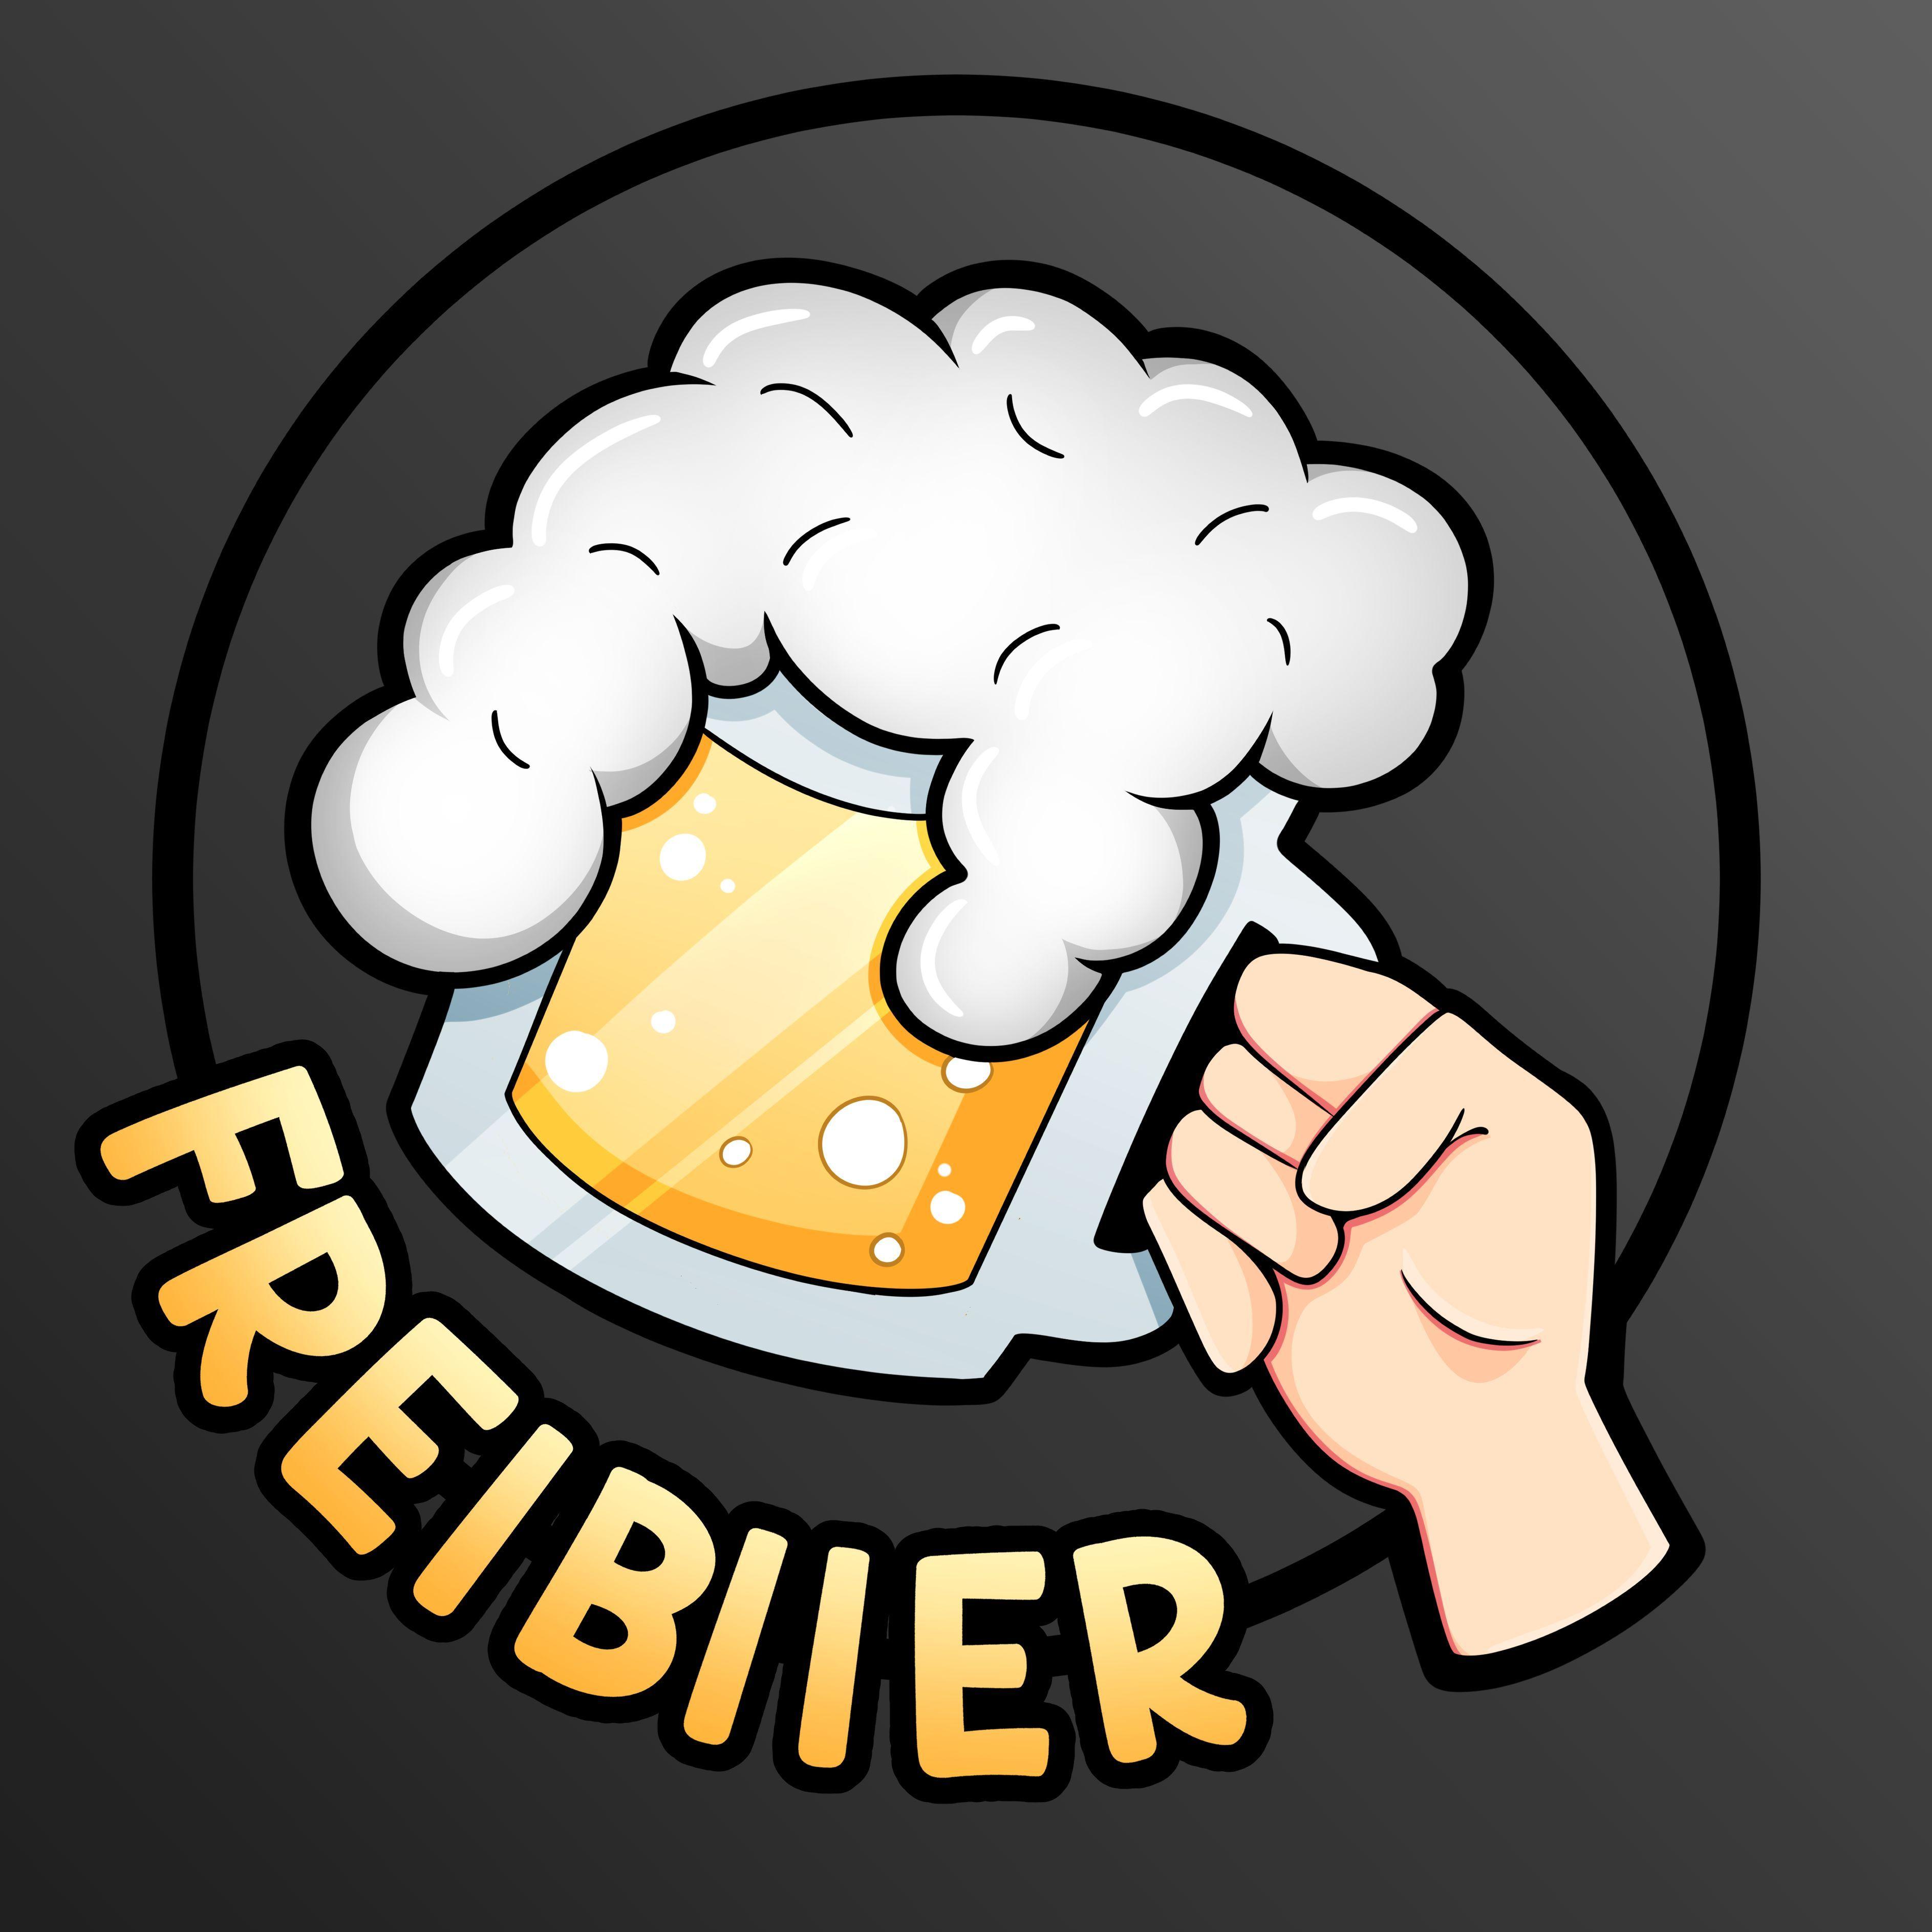 Player Freibiier avatar